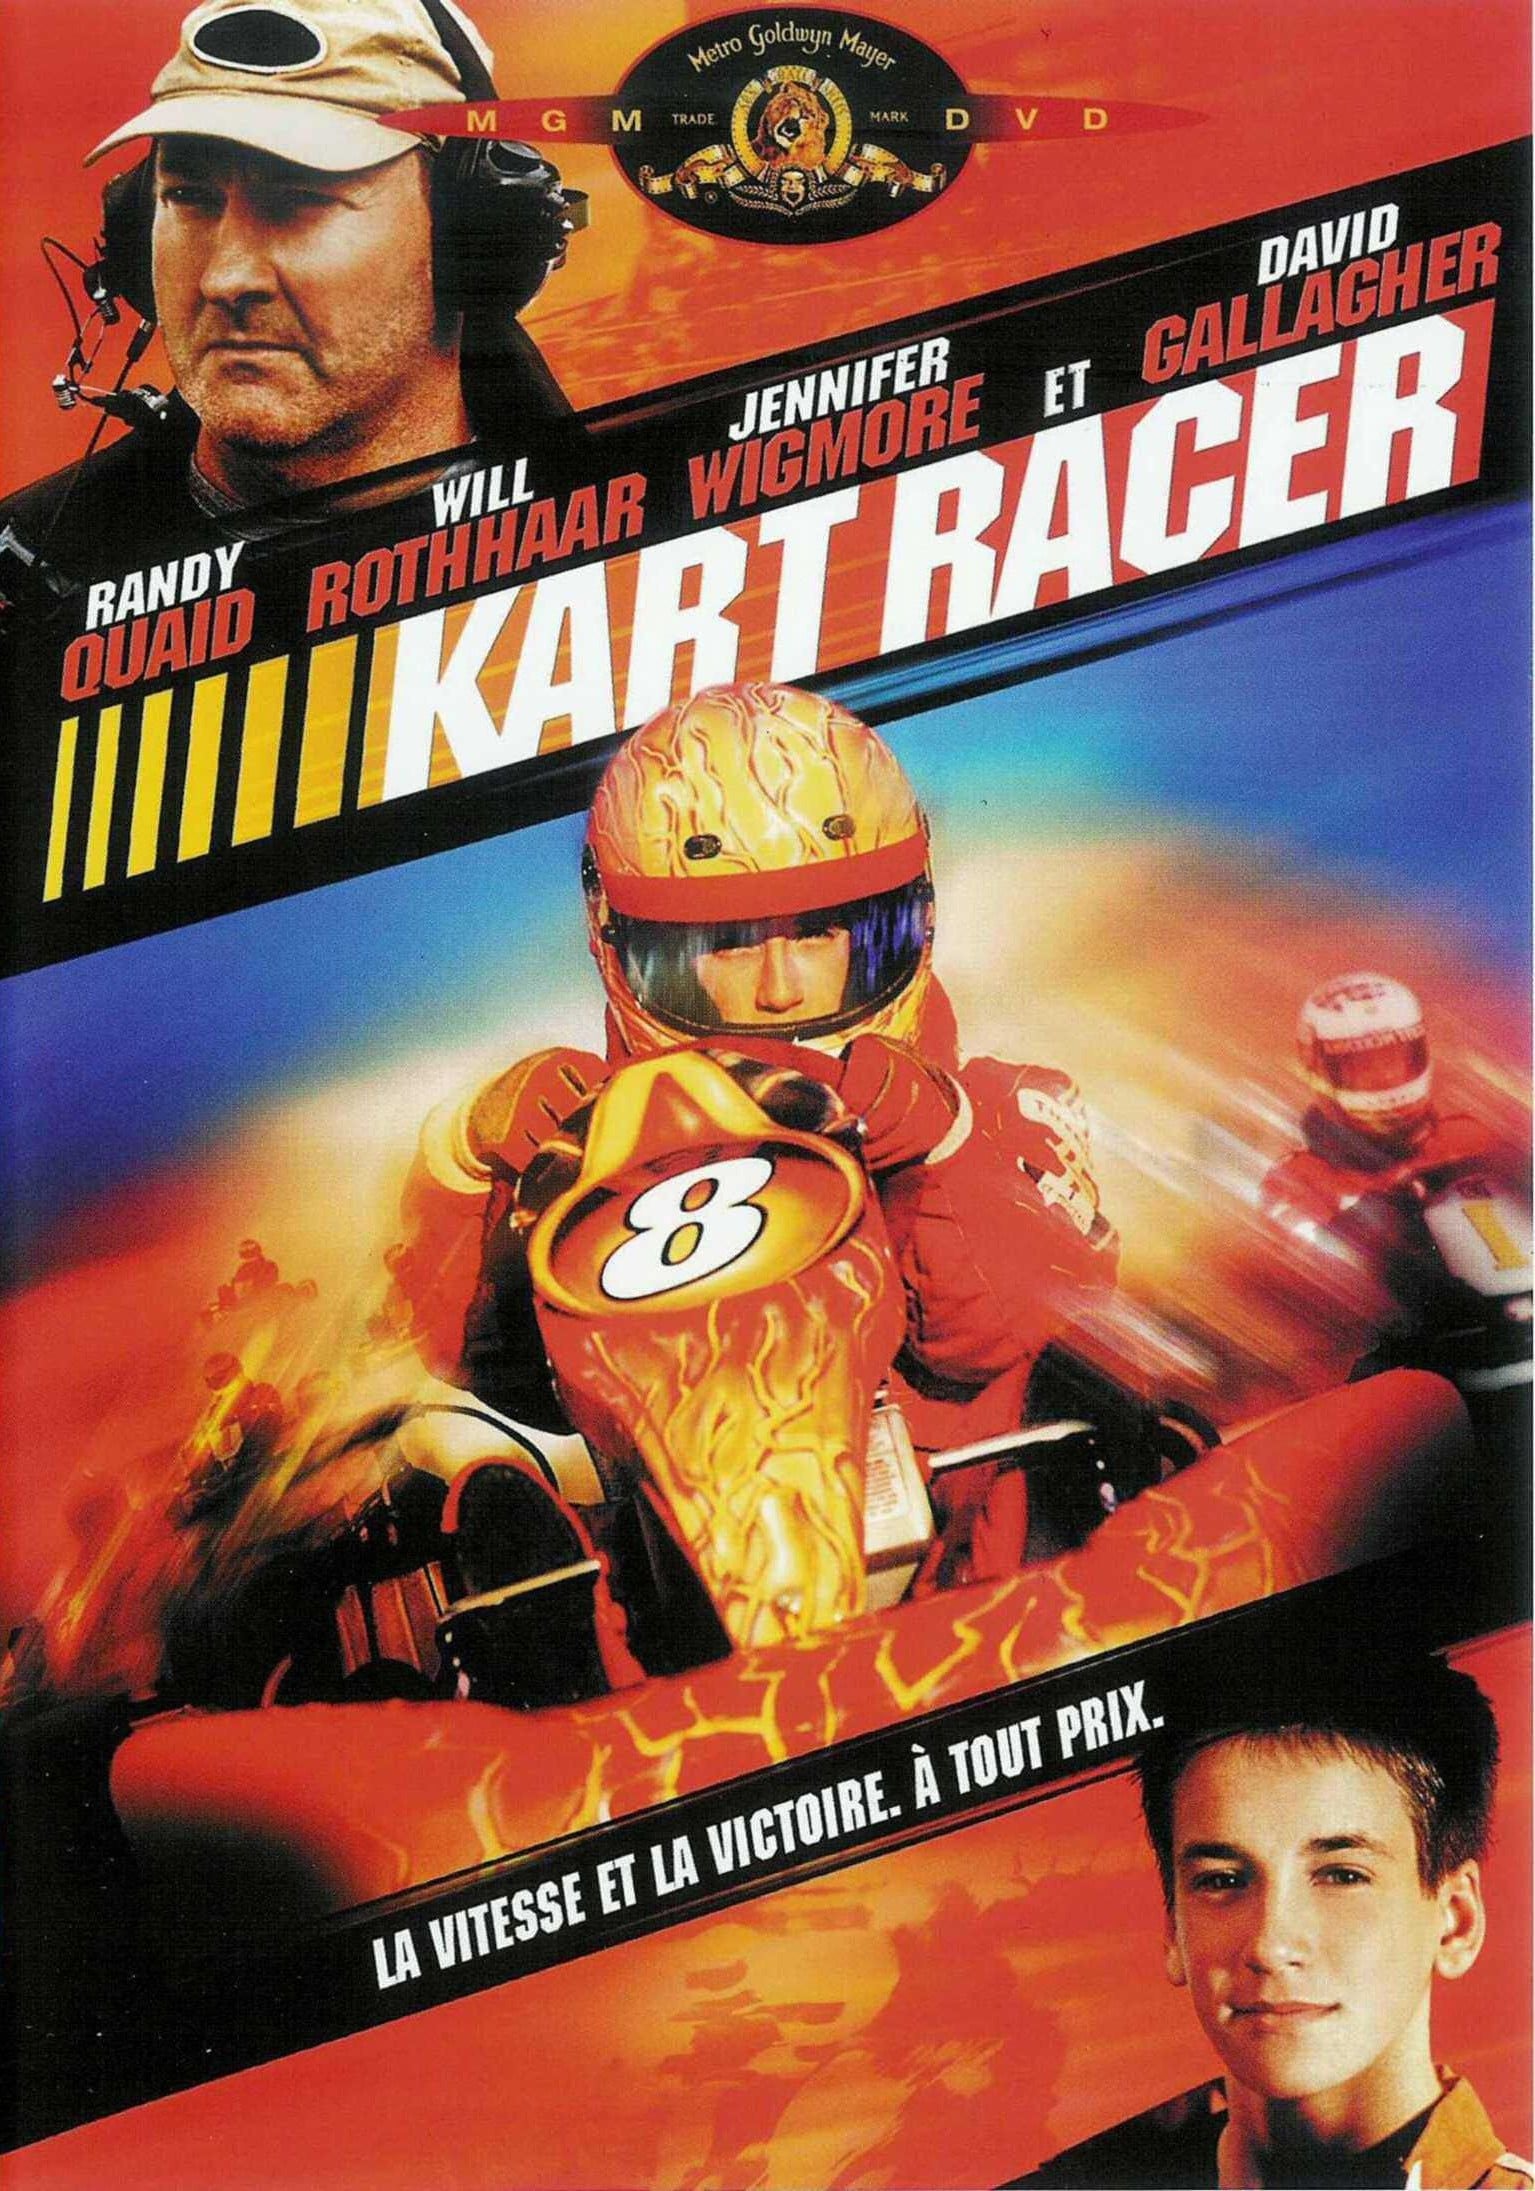 Plakat von "Kart Racer"